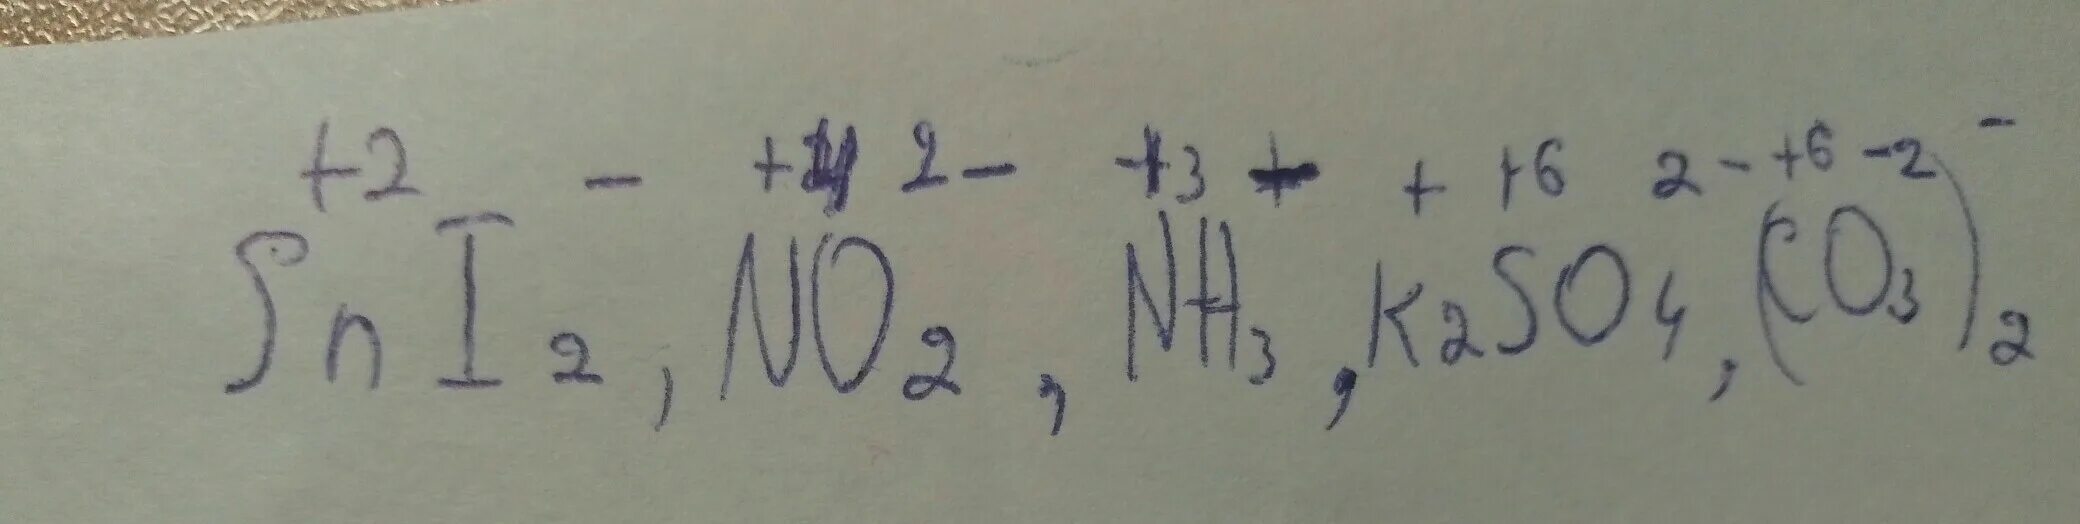 Валентность so2. K2so4 валентность. Валентность k2so4 равна. Определить валентность k2so4. (Nh4)2so4 валентность.